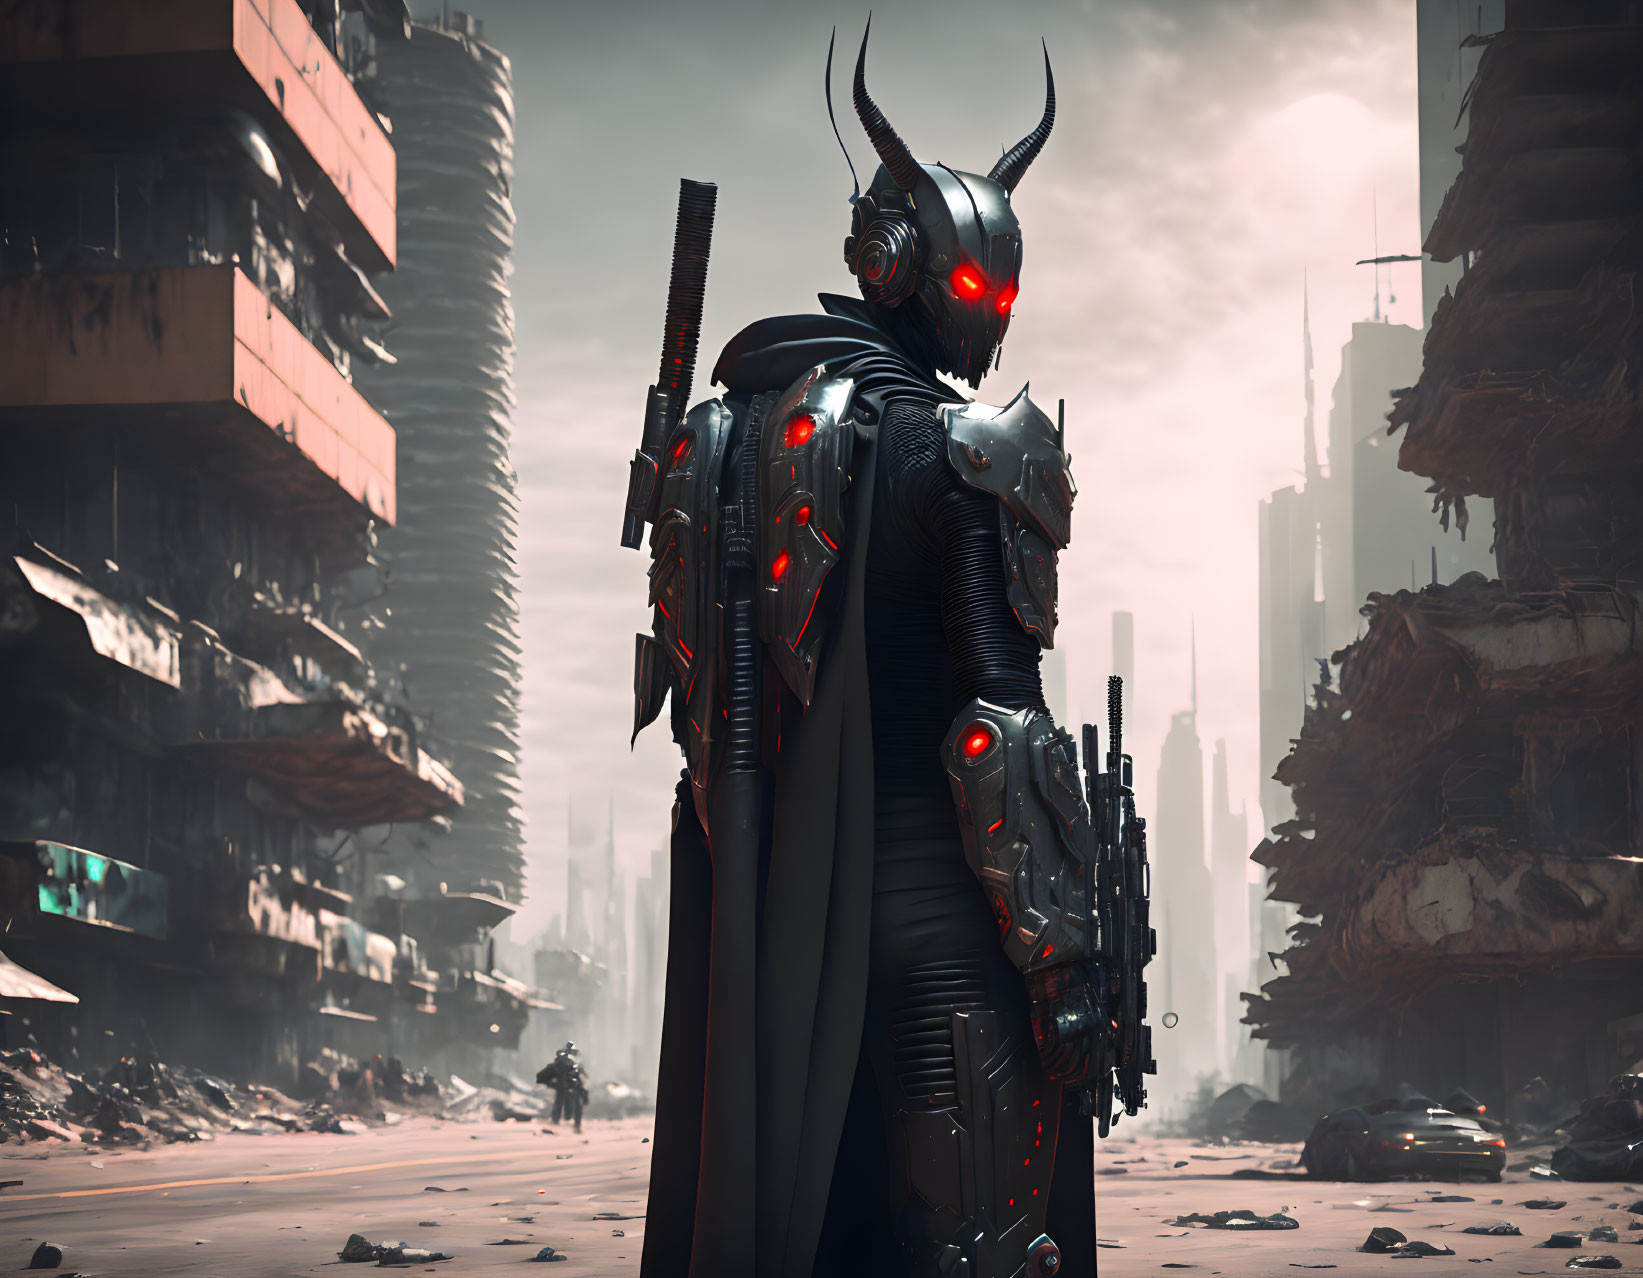 Futuristic warrior in black armor in dystopian cityscape